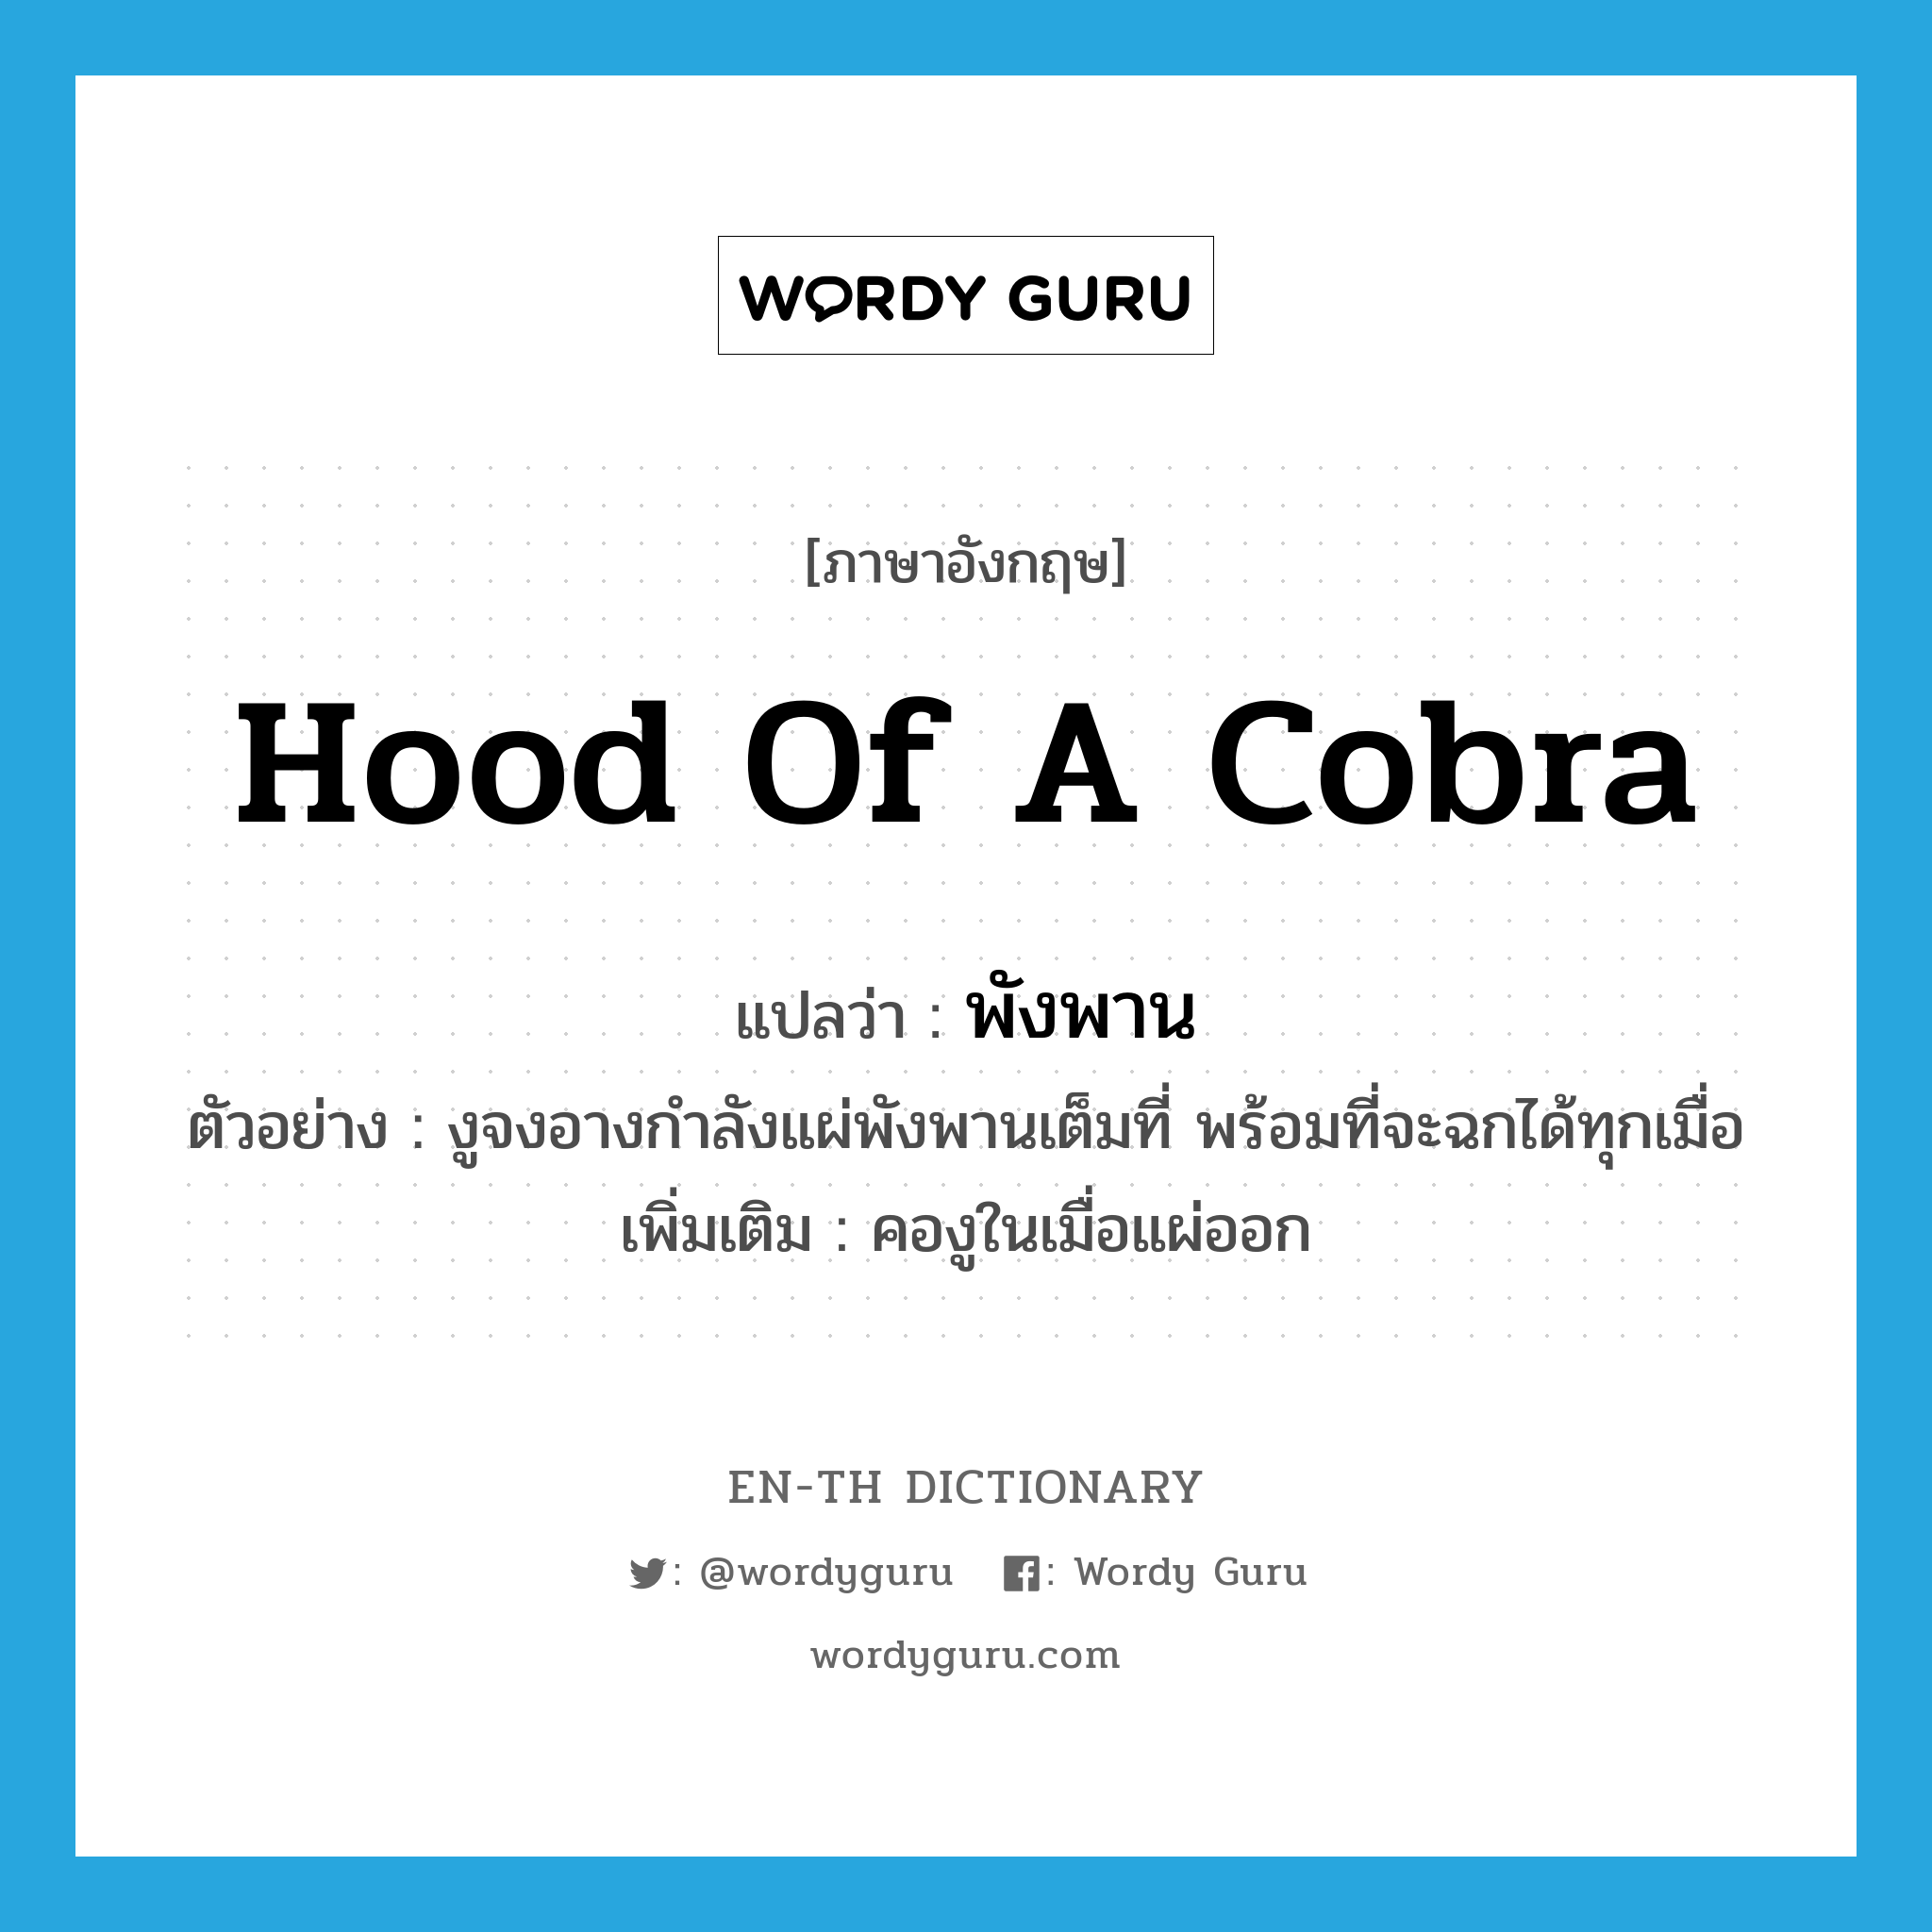 hood of a cobra แปลว่า?, คำศัพท์ภาษาอังกฤษ hood of a cobra แปลว่า พังพาน ประเภท N ตัวอย่าง งูจงอางกำลังแผ่พังพานเต็มที่ พร้อมที่จะฉกได้ทุกเมื่อ เพิ่มเติม คองูในเมื่อแผ่ออก หมวด N